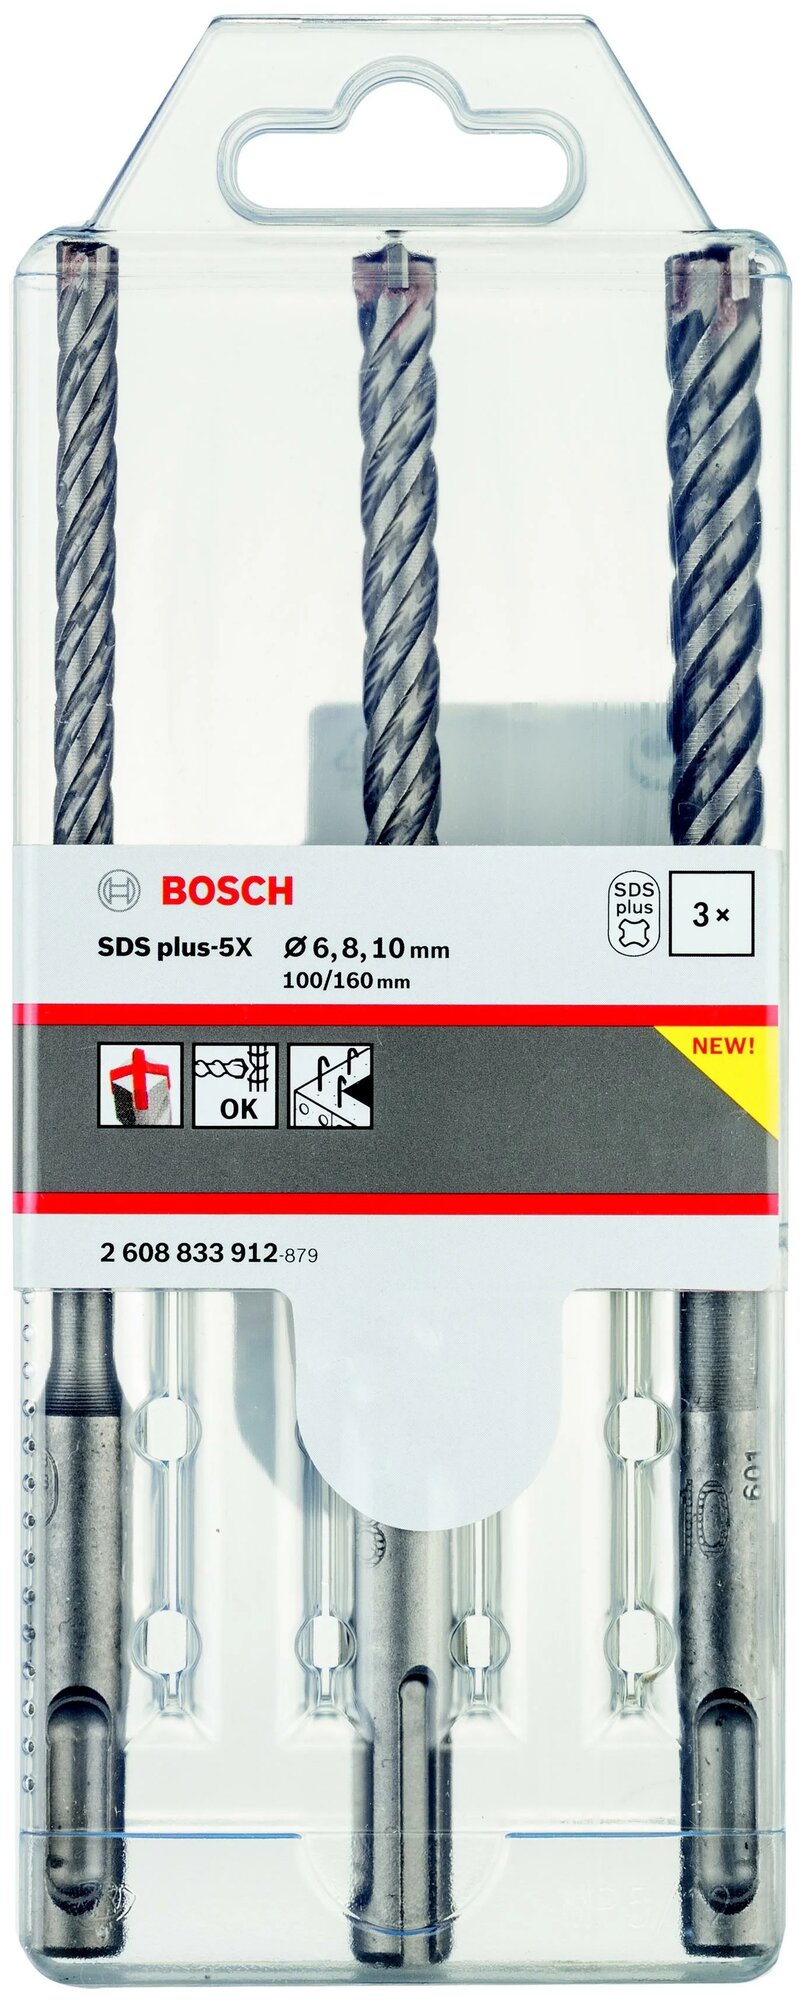 Набор буров Bosch SDS+ plus-5X (3шт) 2 608 833 912